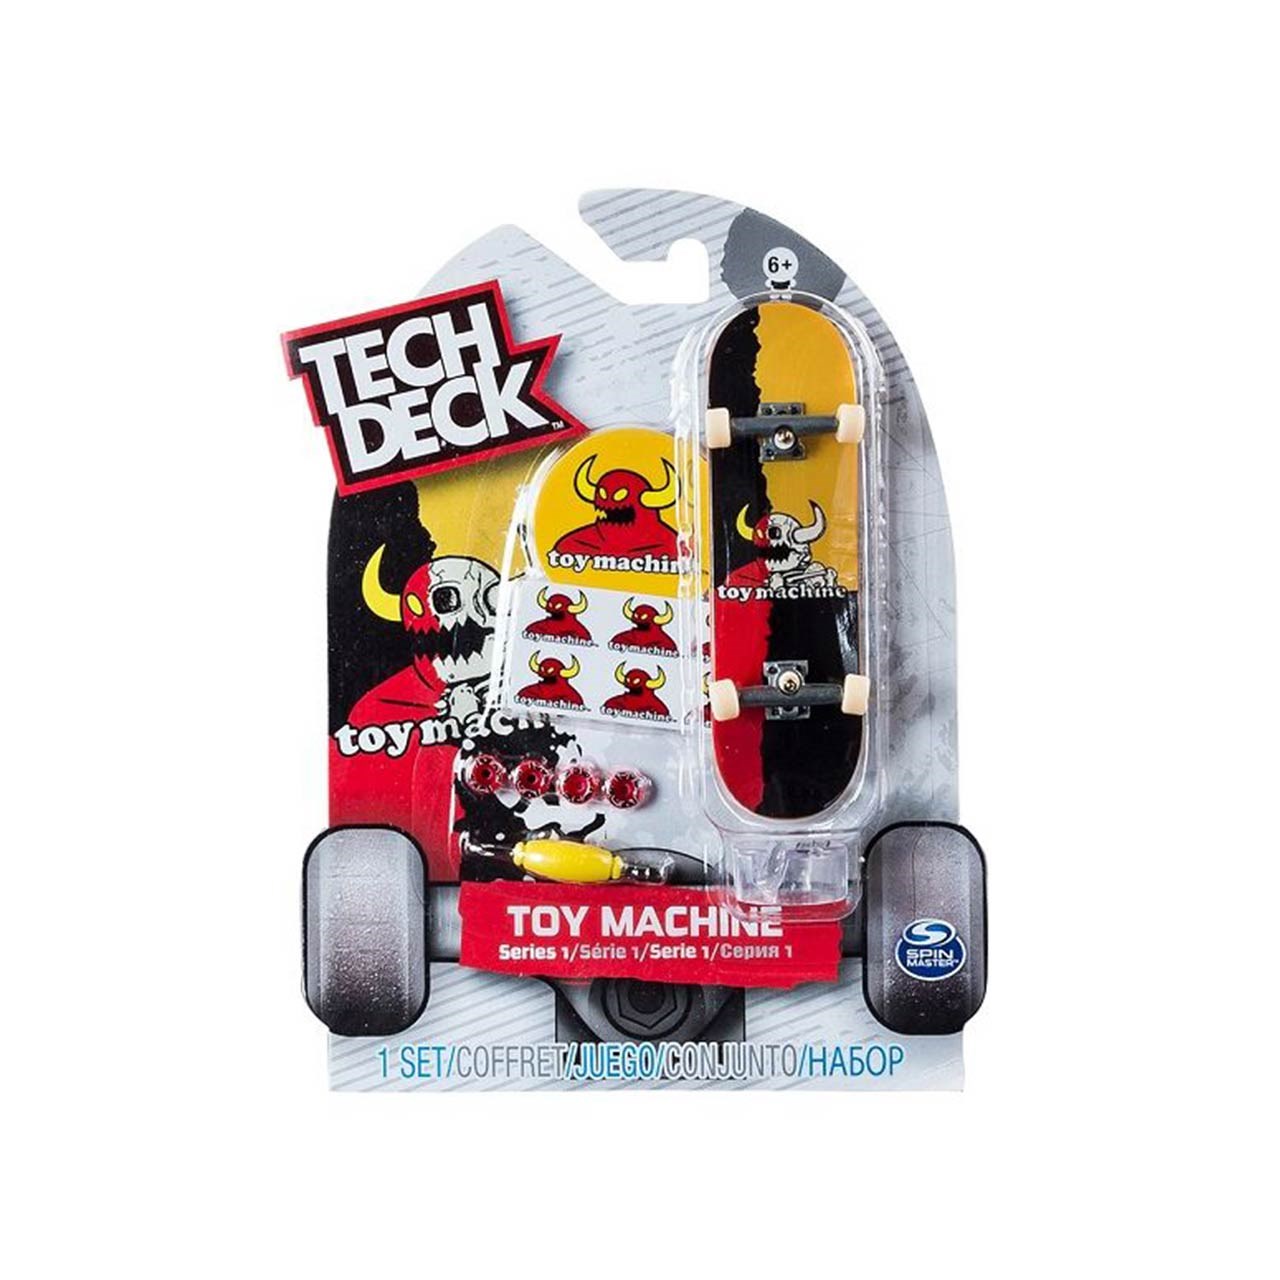 اسکیت بورد اسباب بازی اسپین مستر مدل Tech Deck Blue Toy Machine